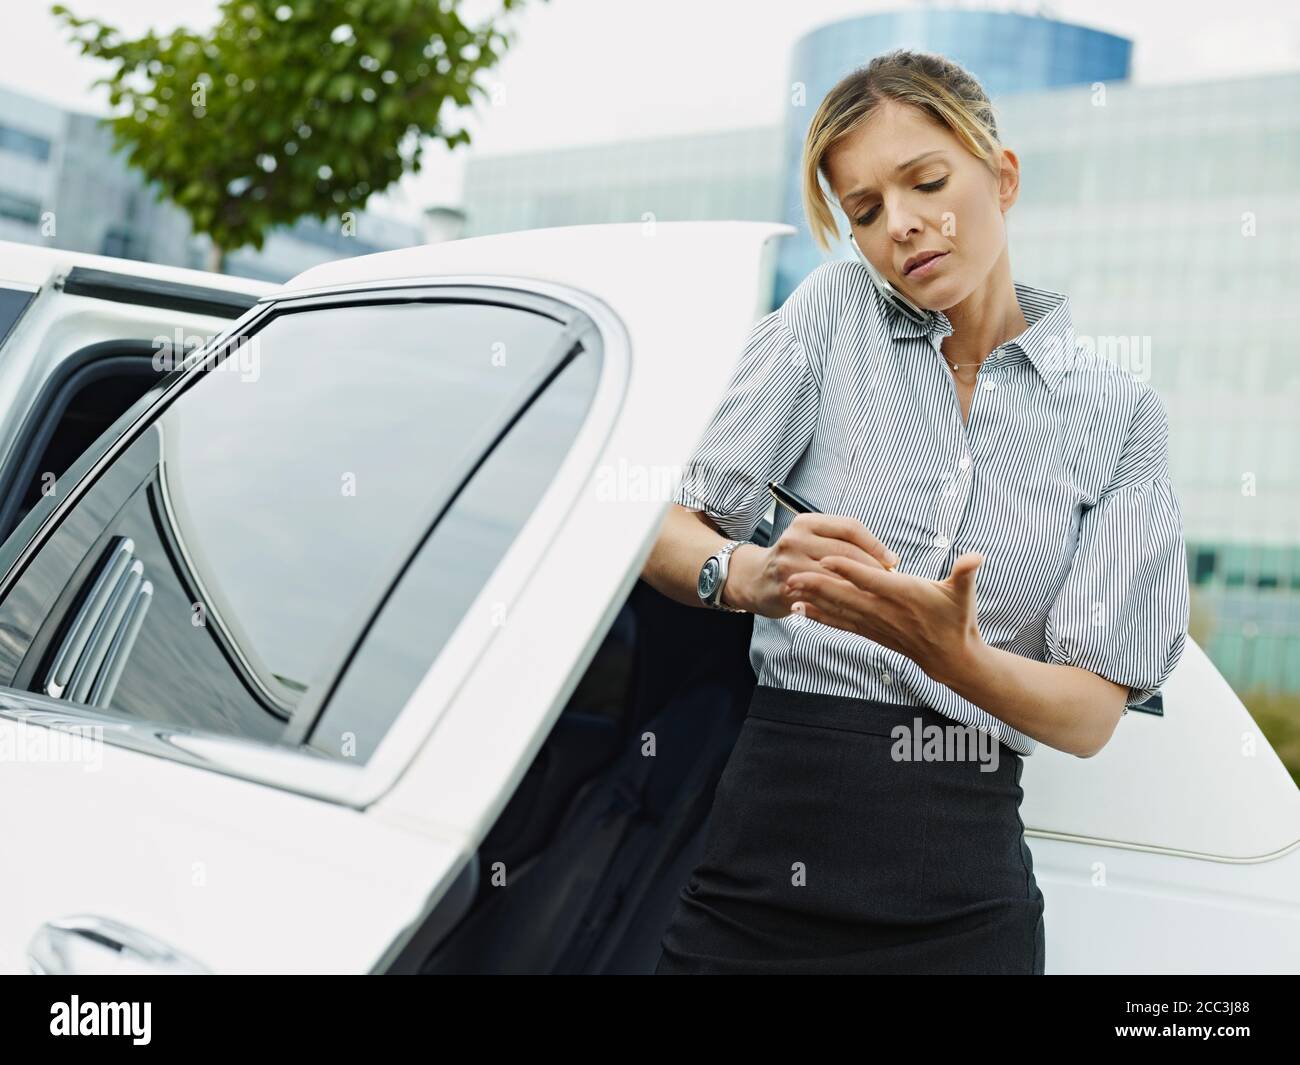 La mujer de negocios toma notas en la palma de la mano durante la llamada telefónica Foto de stock